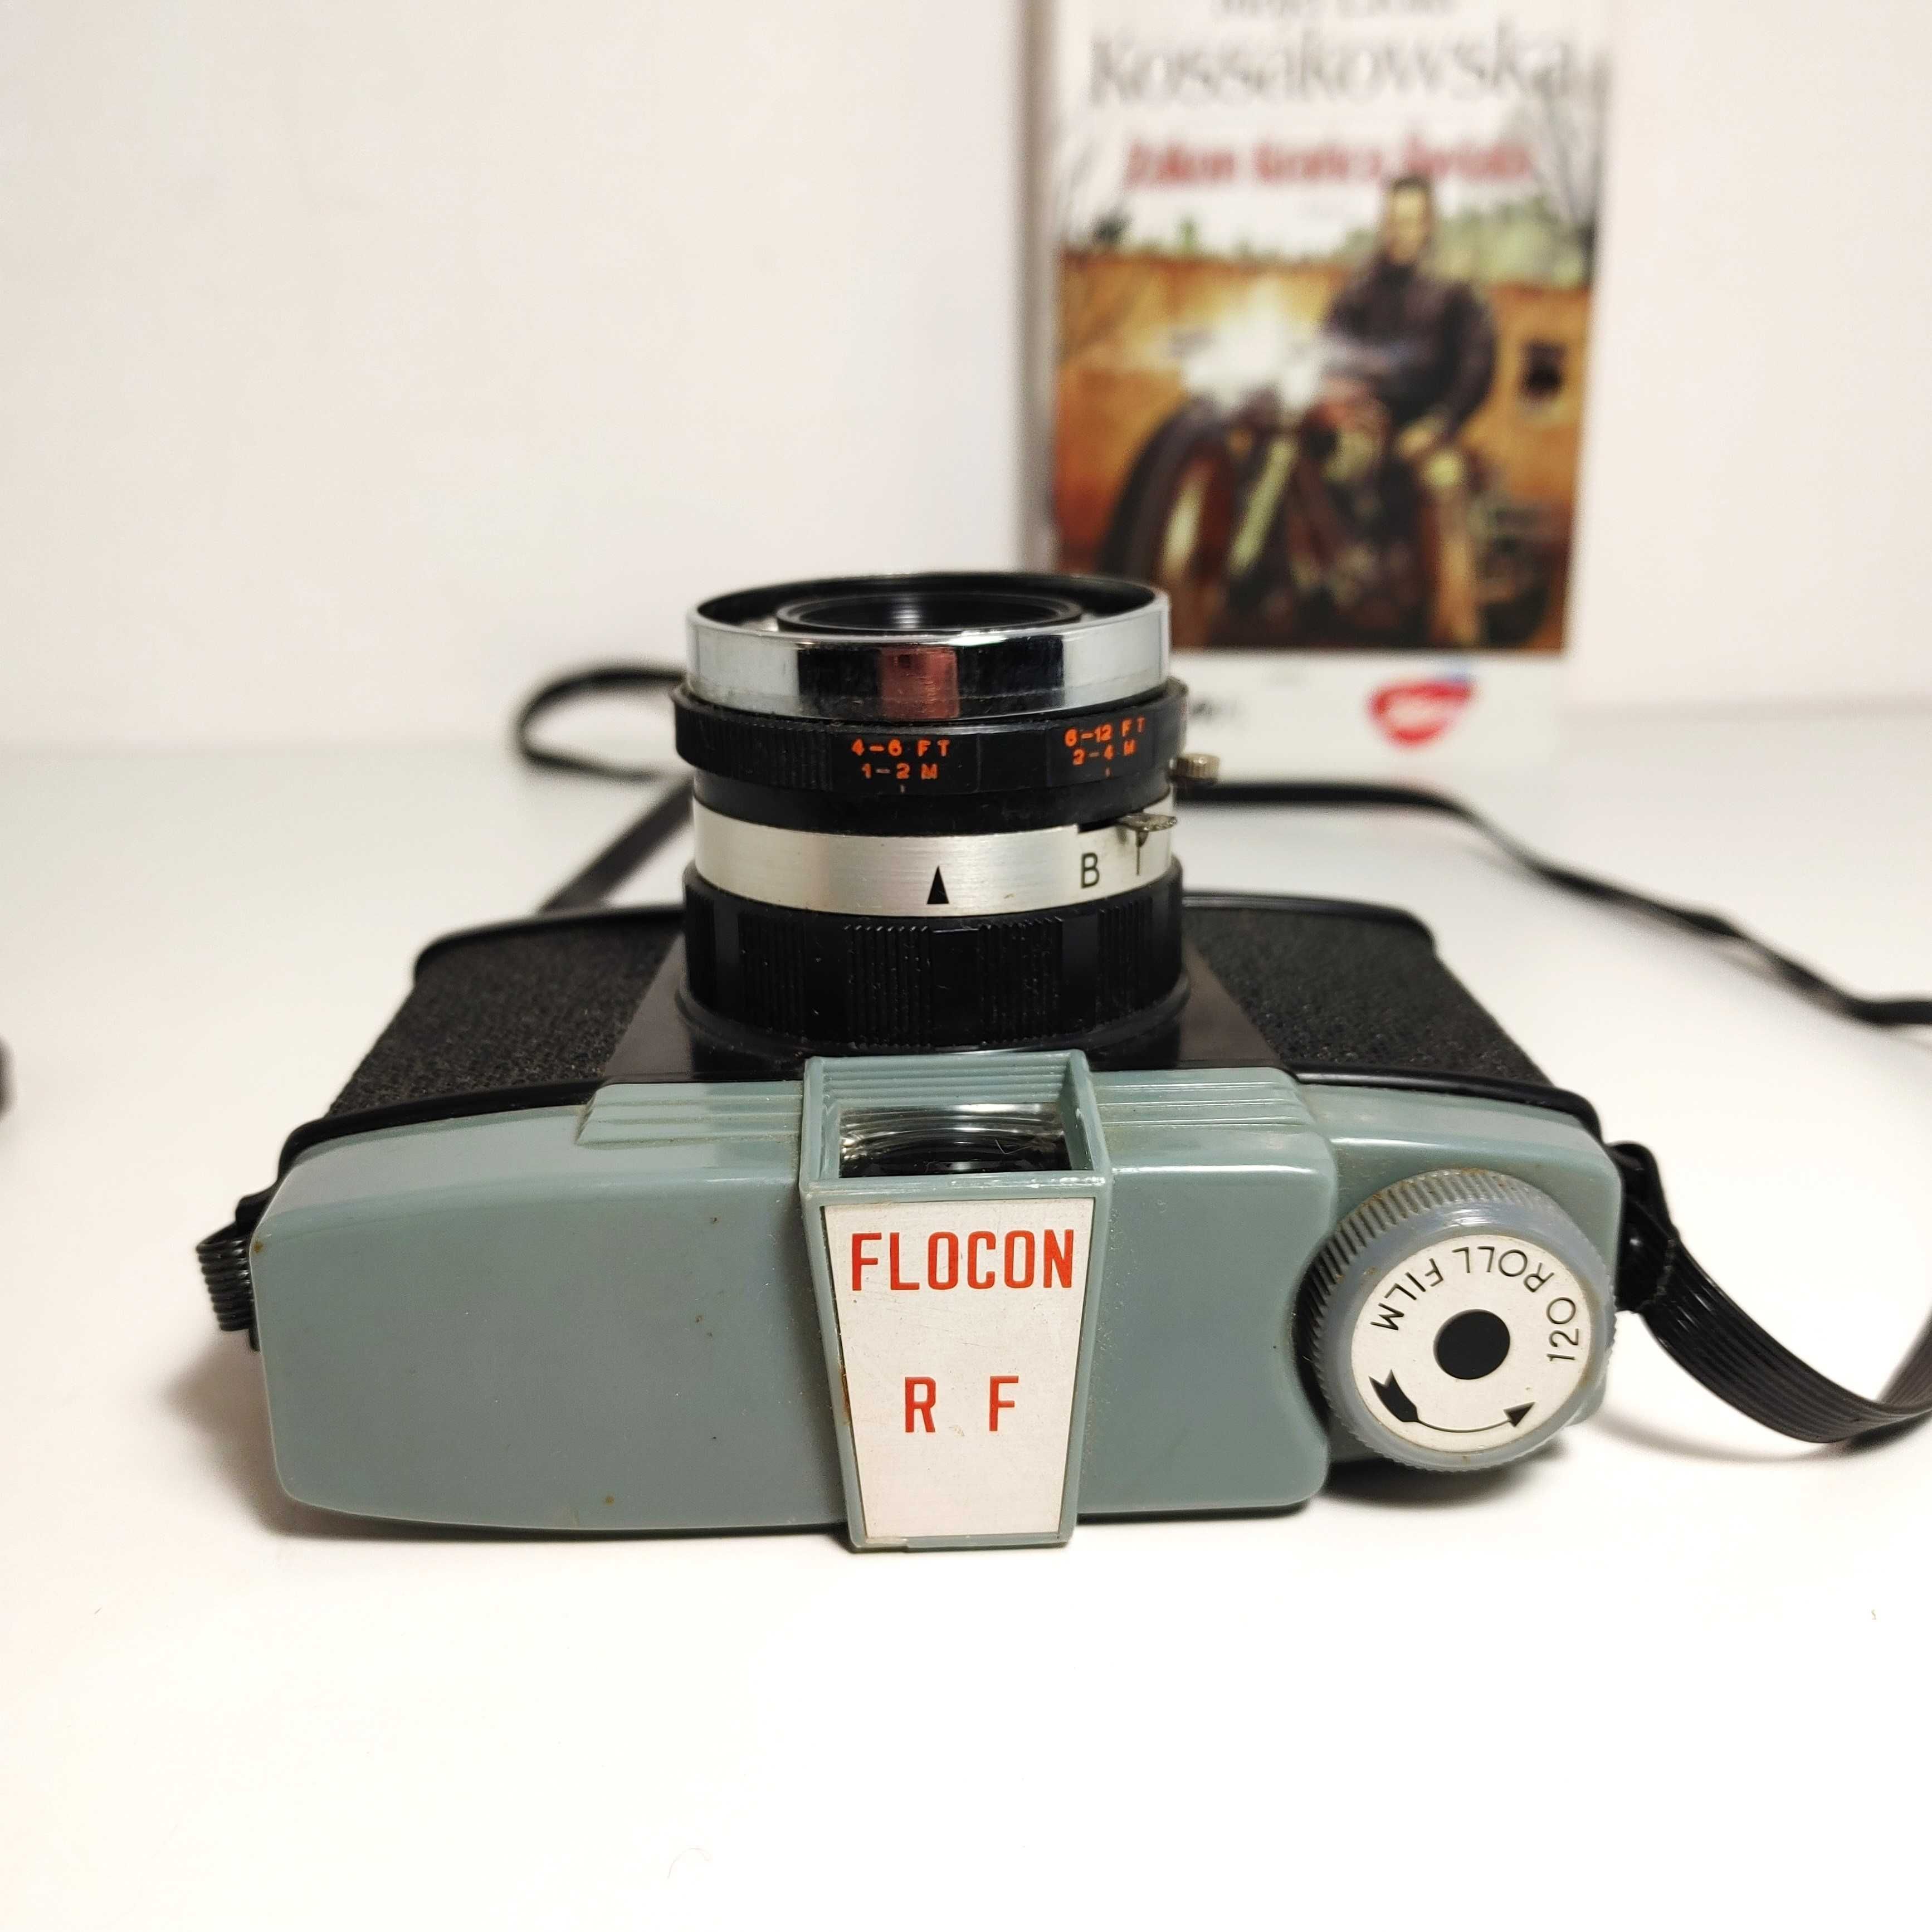 Aparat analogowy z lat 60 tych XX wieku FLOCON FR- DIANA Ciekawostka